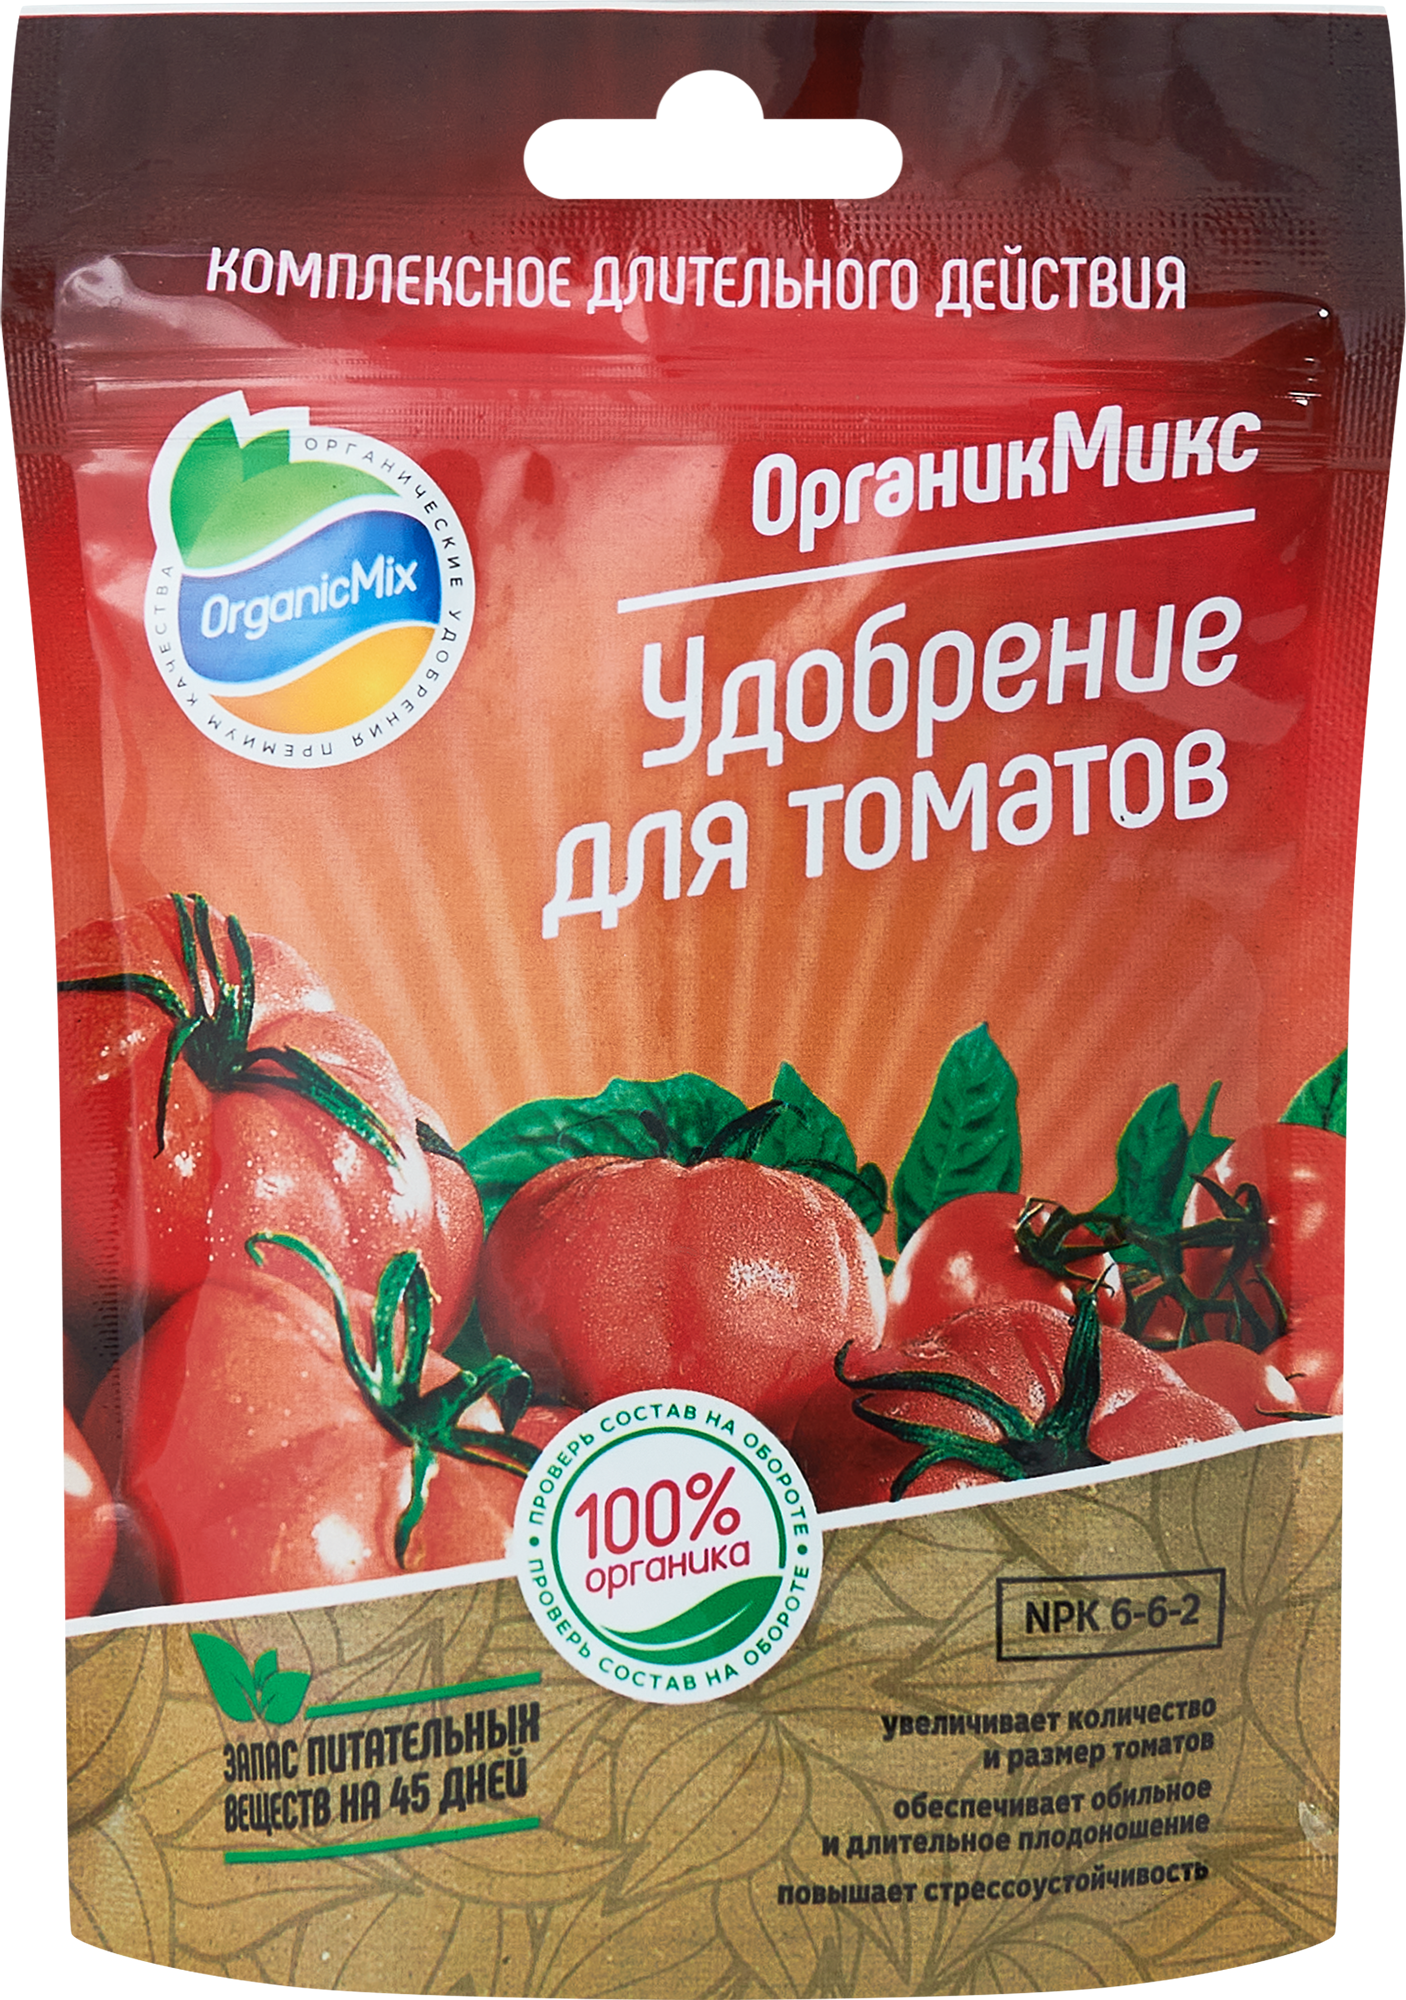 85246585 Органическое удобрение Органик Микс для томатов 200 г STLM-0060408 ОРГАНИКМИКС